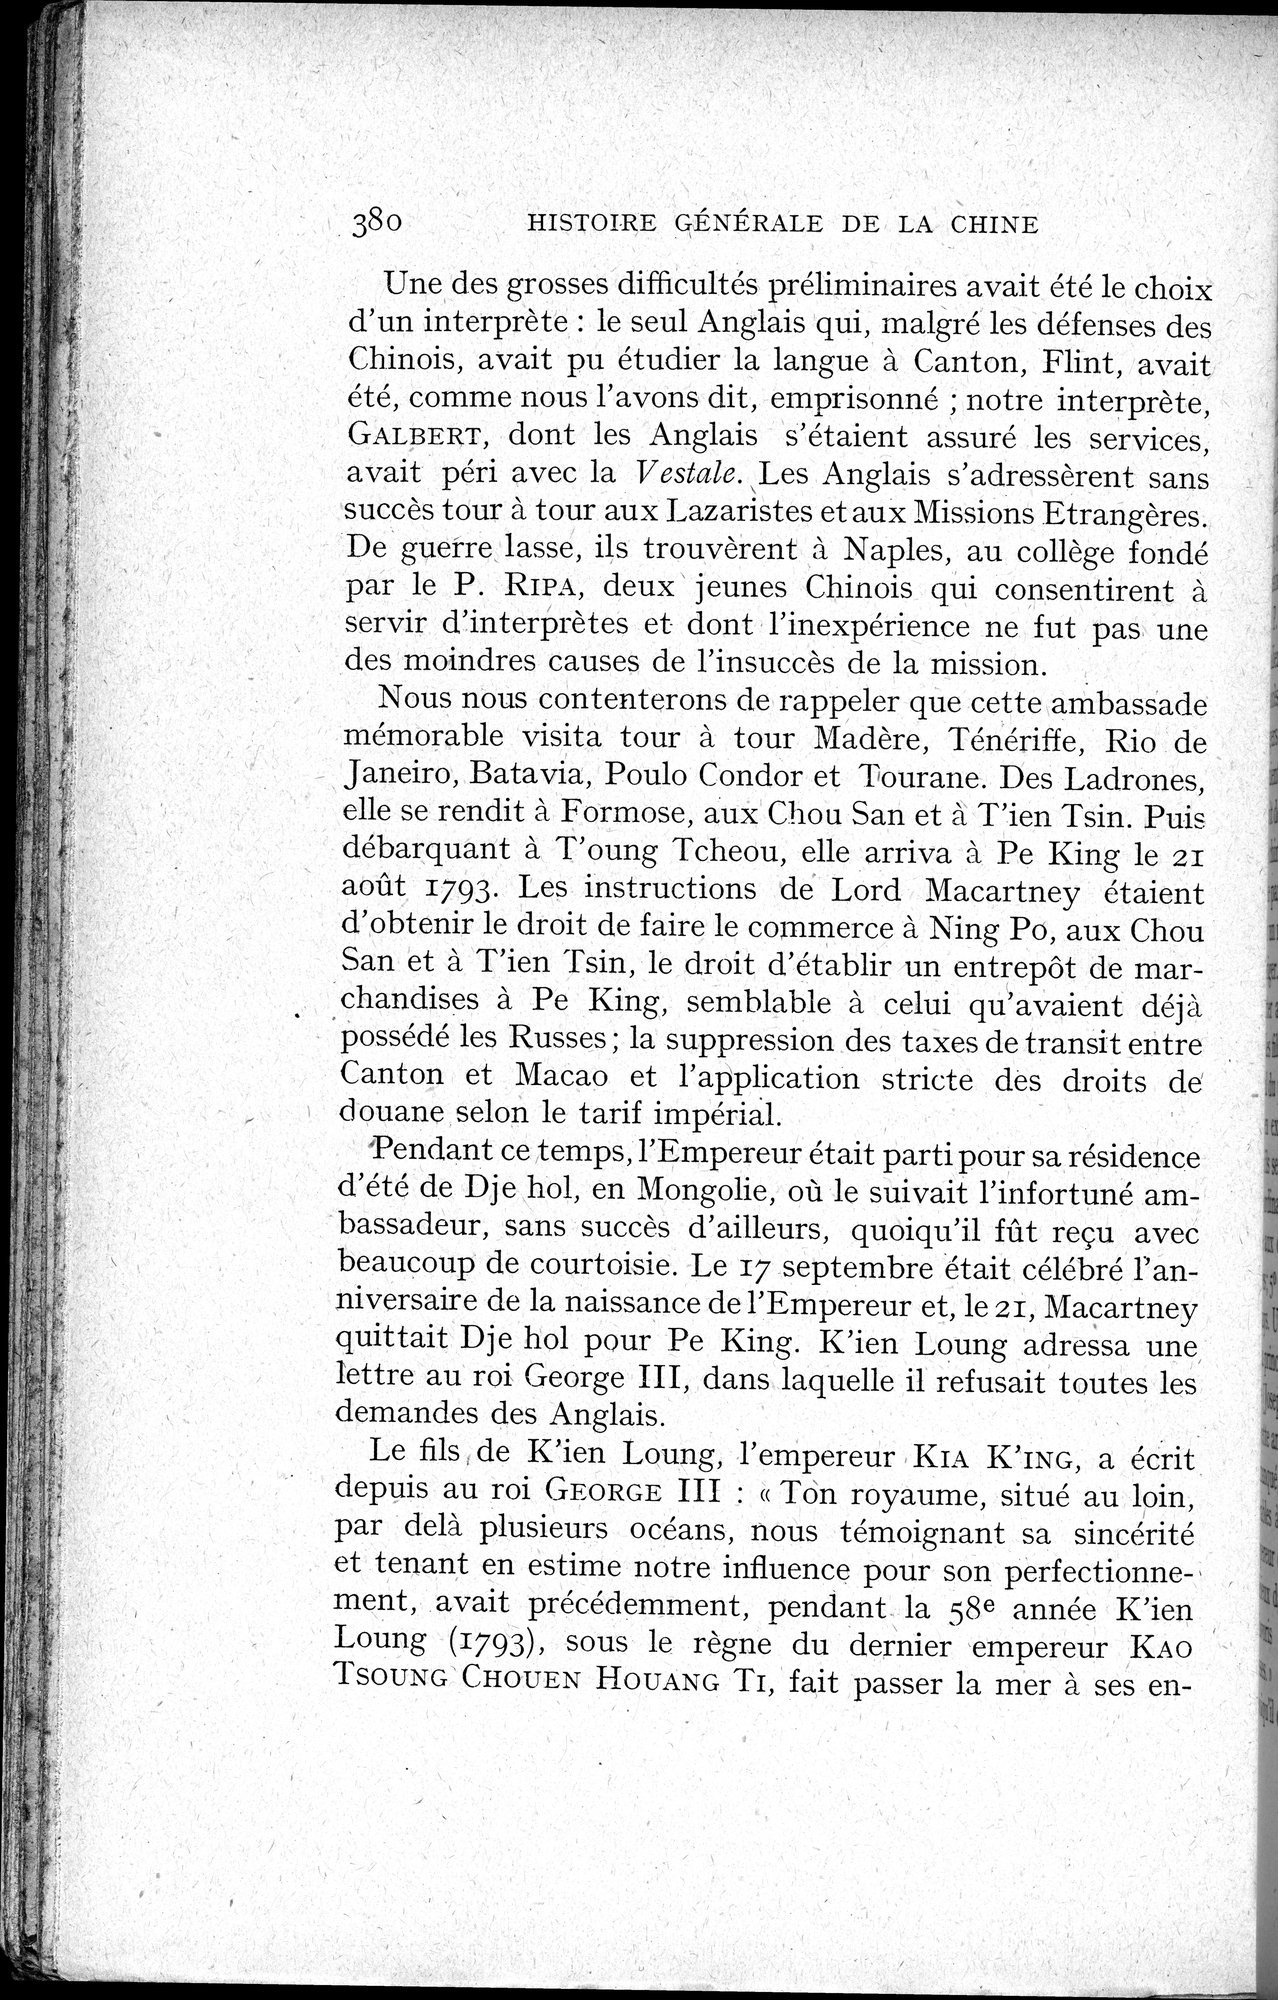 Histoire Générale de la Chine : vol.3 / Page 382 (Grayscale High Resolution Image)